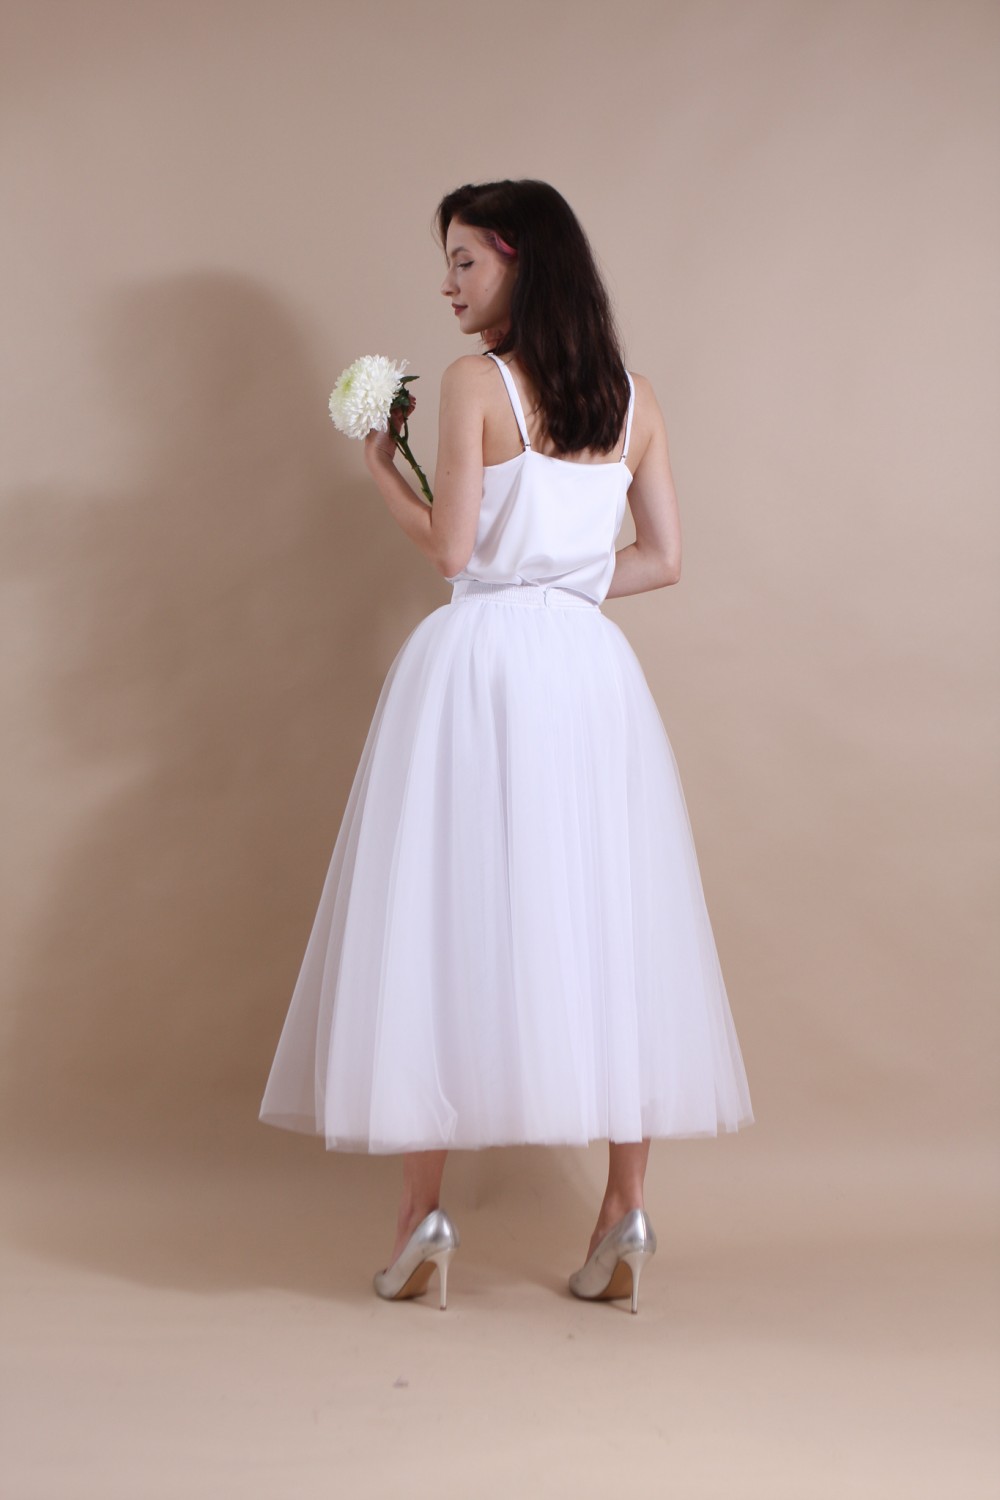 Пышная свадебная юбка-солнце из фатина (60 цветов)   Белая - фото